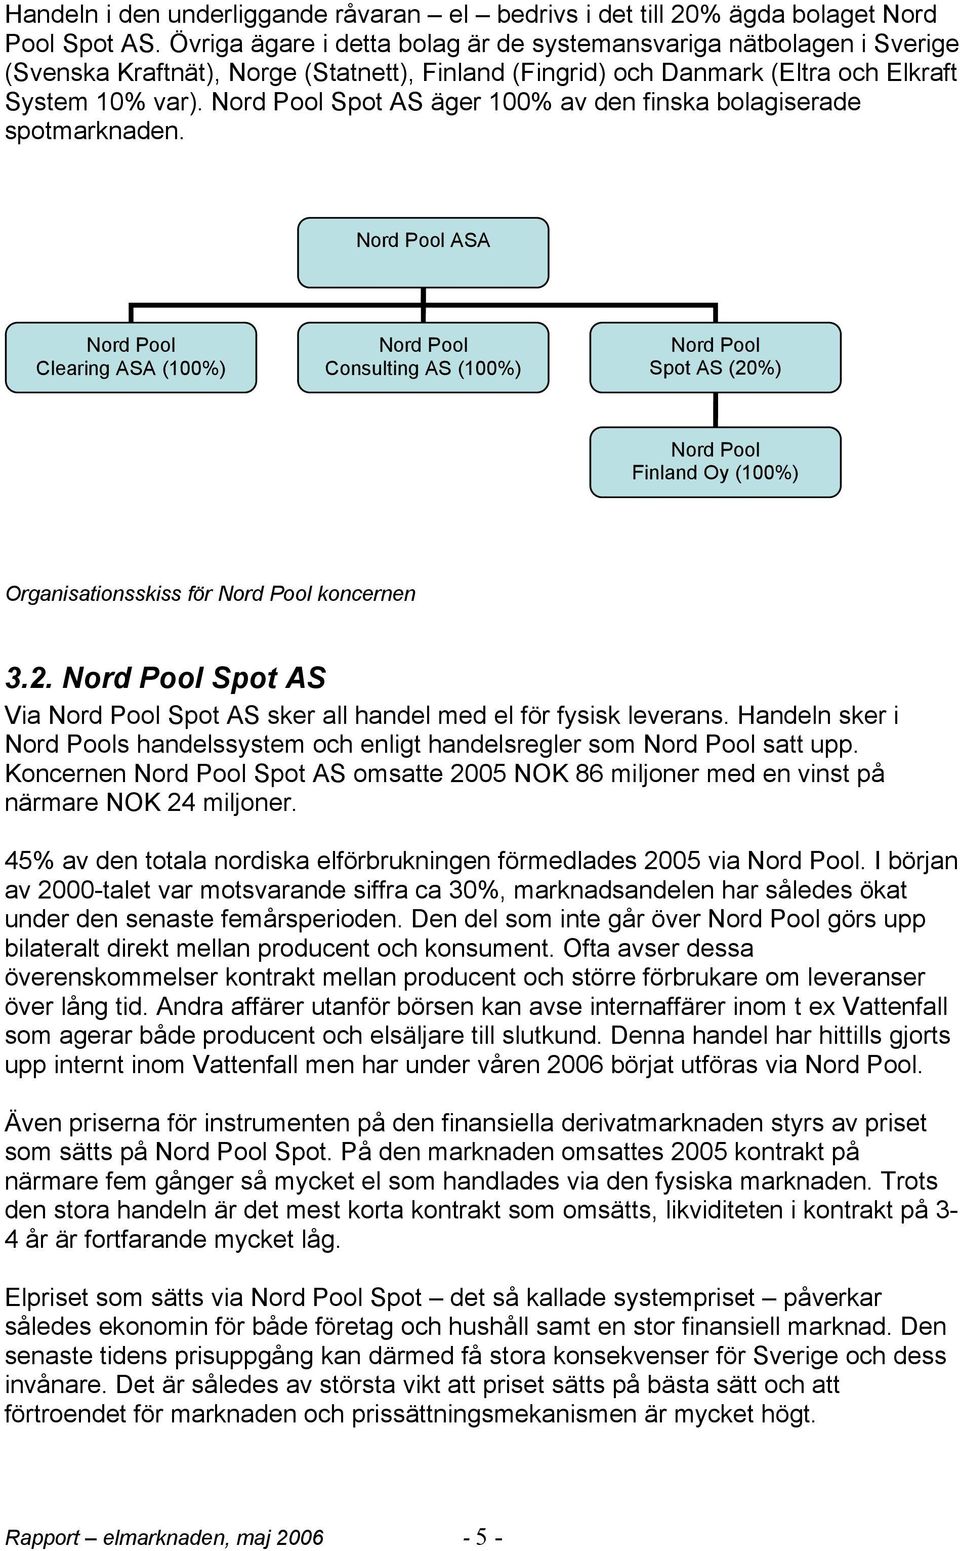 Nord Pool Spot AS äger 100% av den finska bolagiserade spotmarknaden.